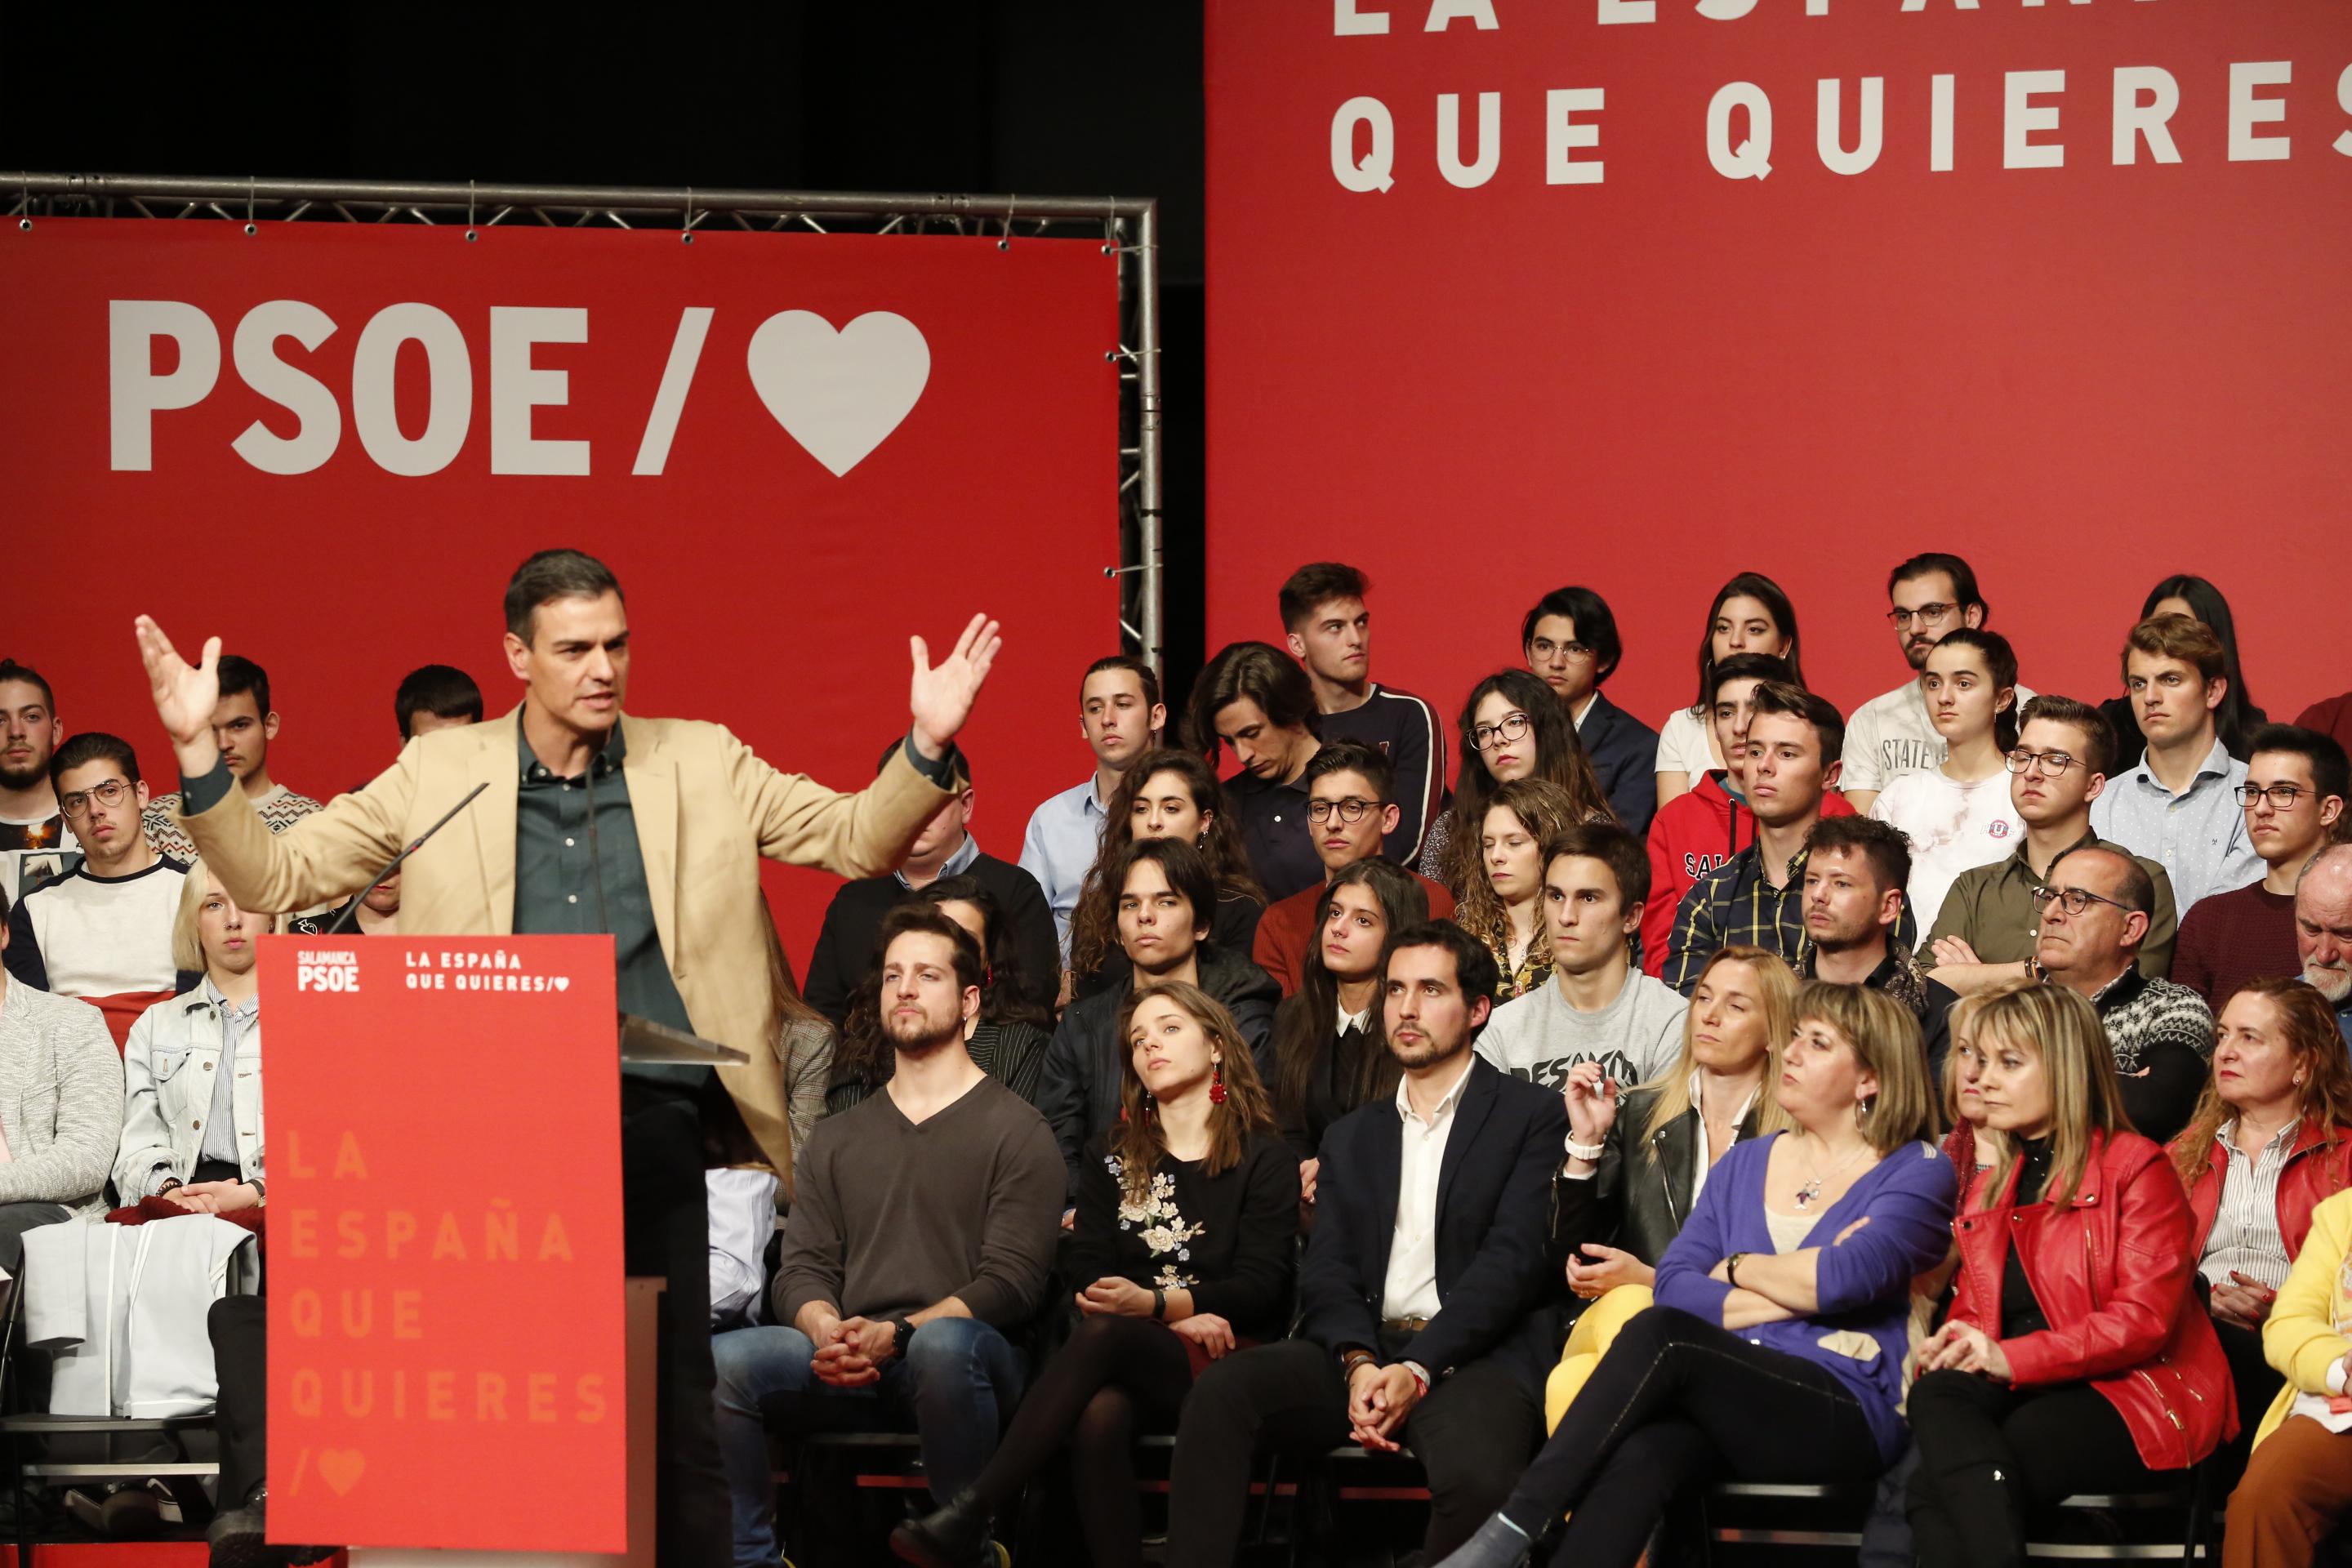 El presidente del Gobierno Pedro Sánchez en un acto con los militantes socialistas en Salamanca. EuropaPress